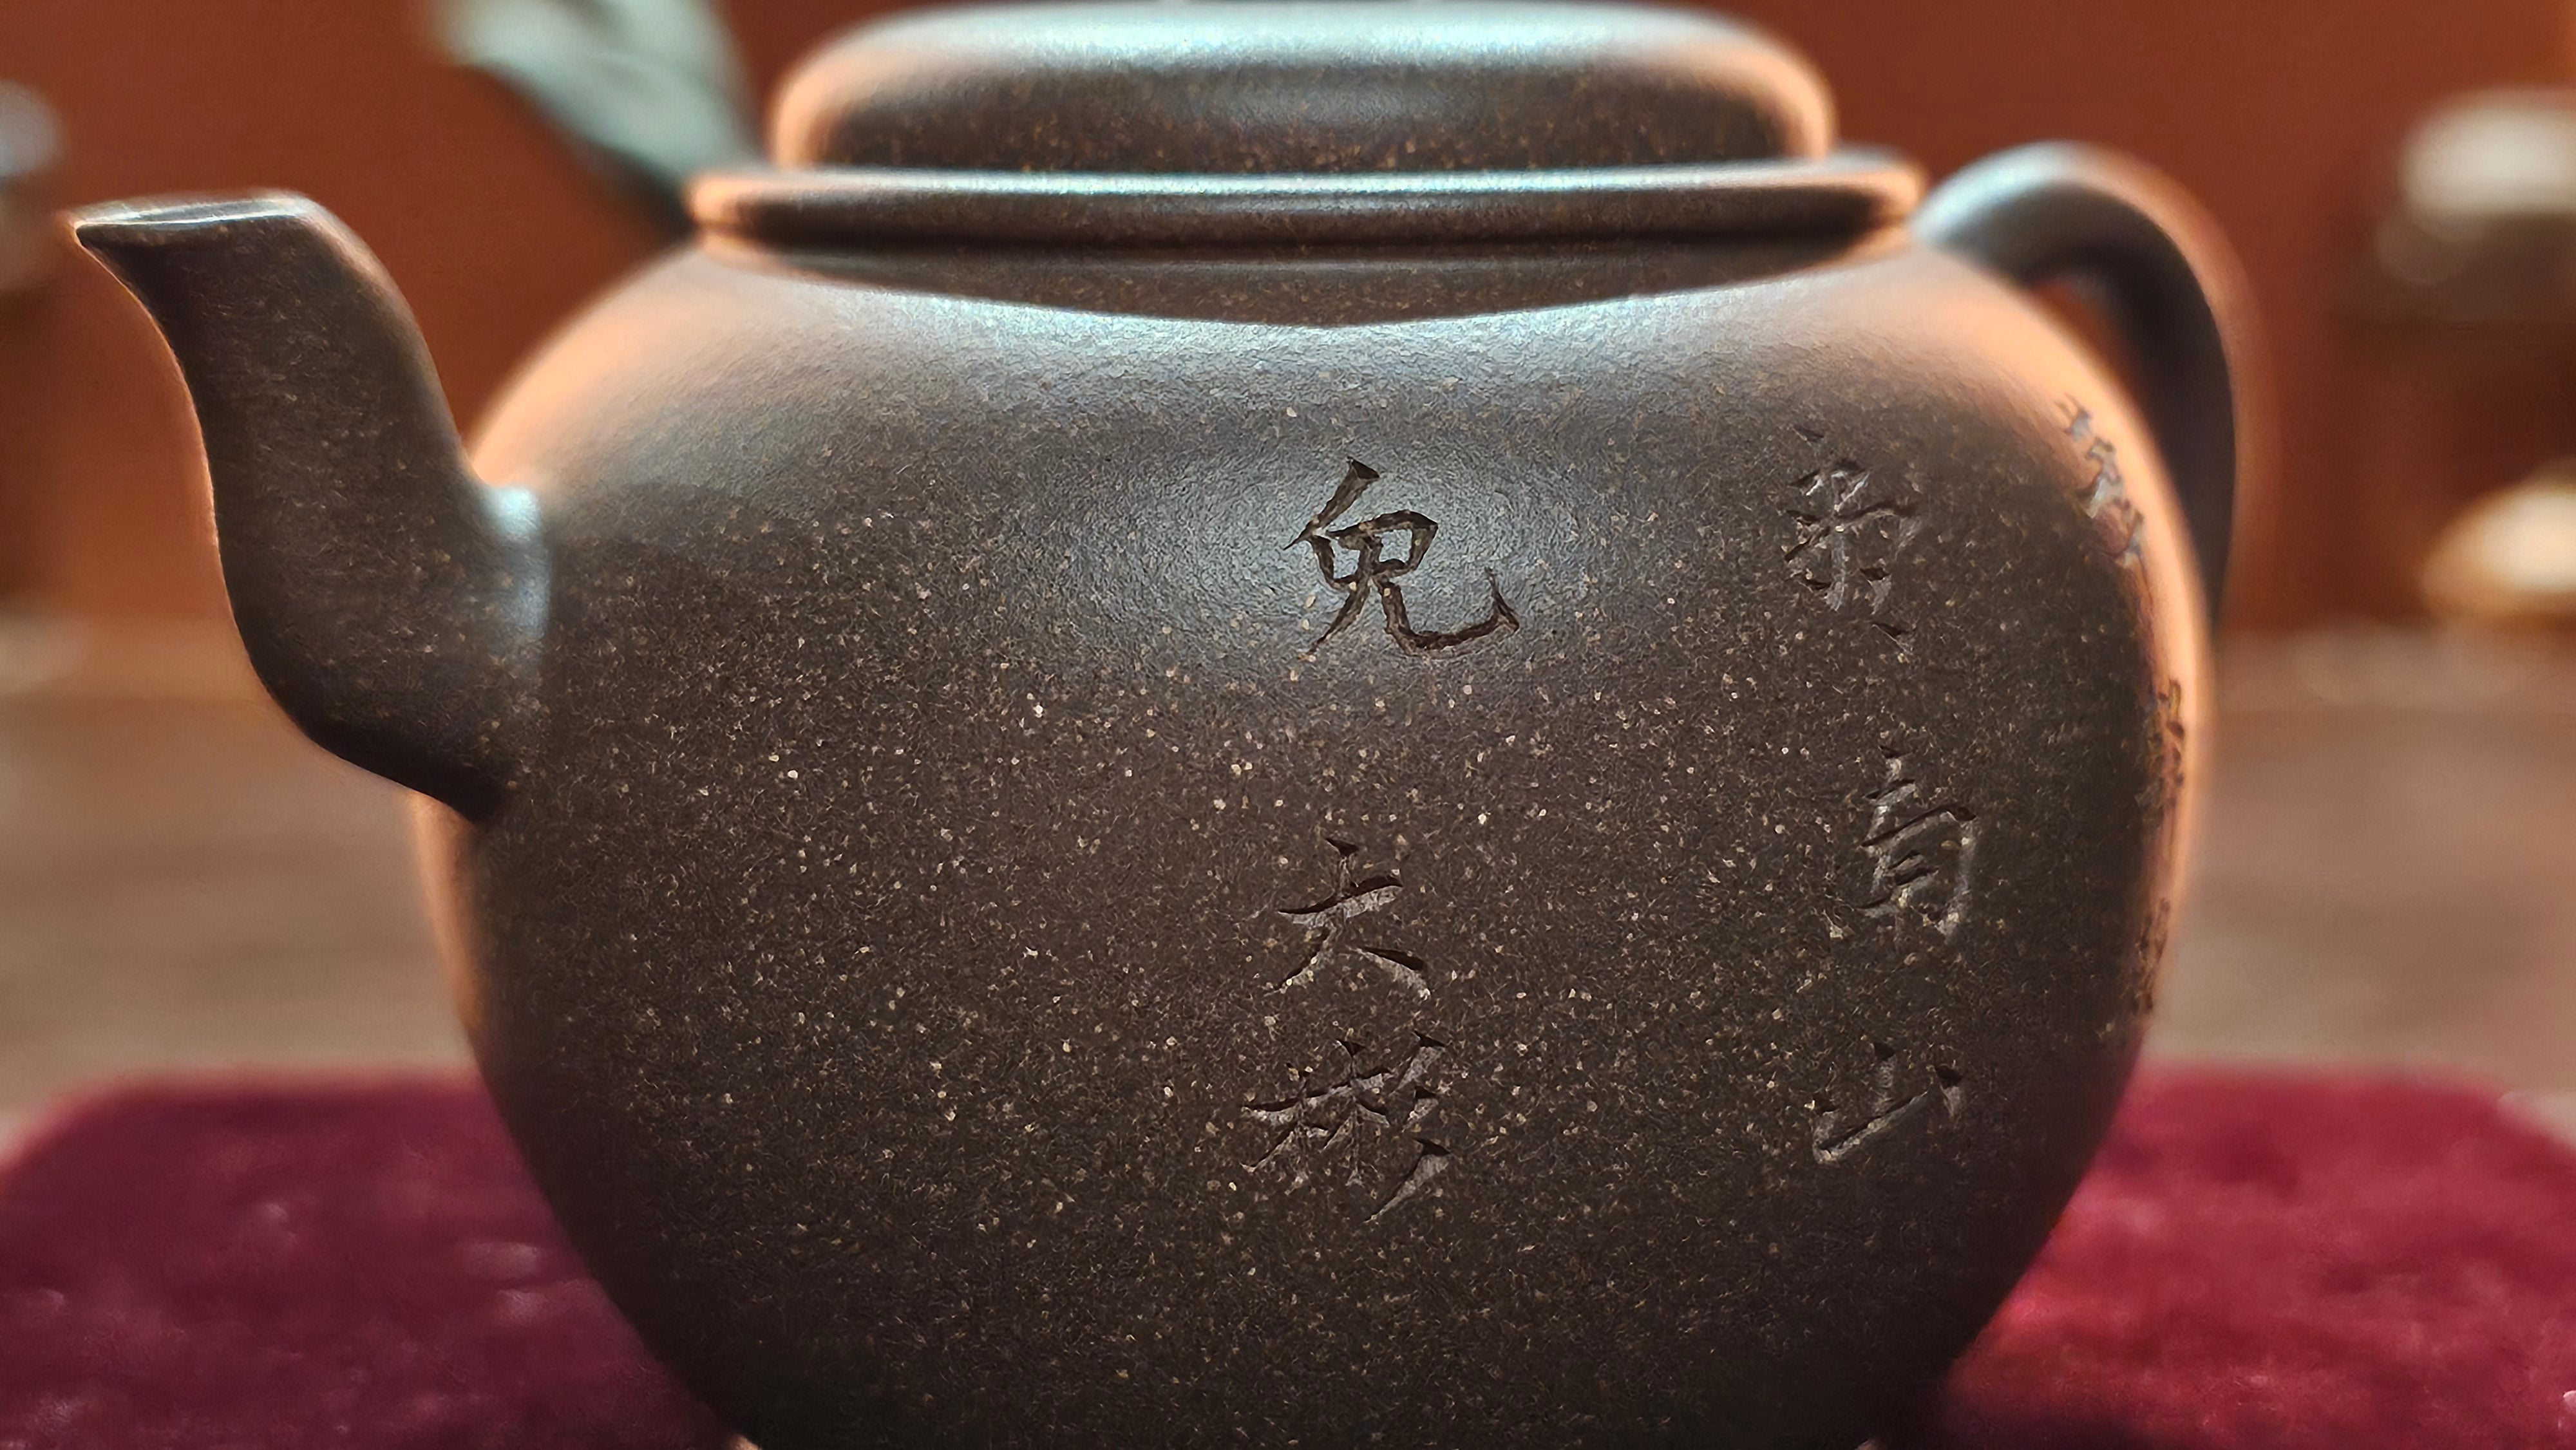 Da Bin Gong Deng 大彬宫灯, 205ml, Gu Fa Lian Ni (Most Archaic Clay Forming) ~ Di Cao Qing with Duan Ni (Tiao Sha combination) *古法练泥~底槽青+段泥(调砂), L4 Assoc Master Du Cheng Yao 堵程尧。